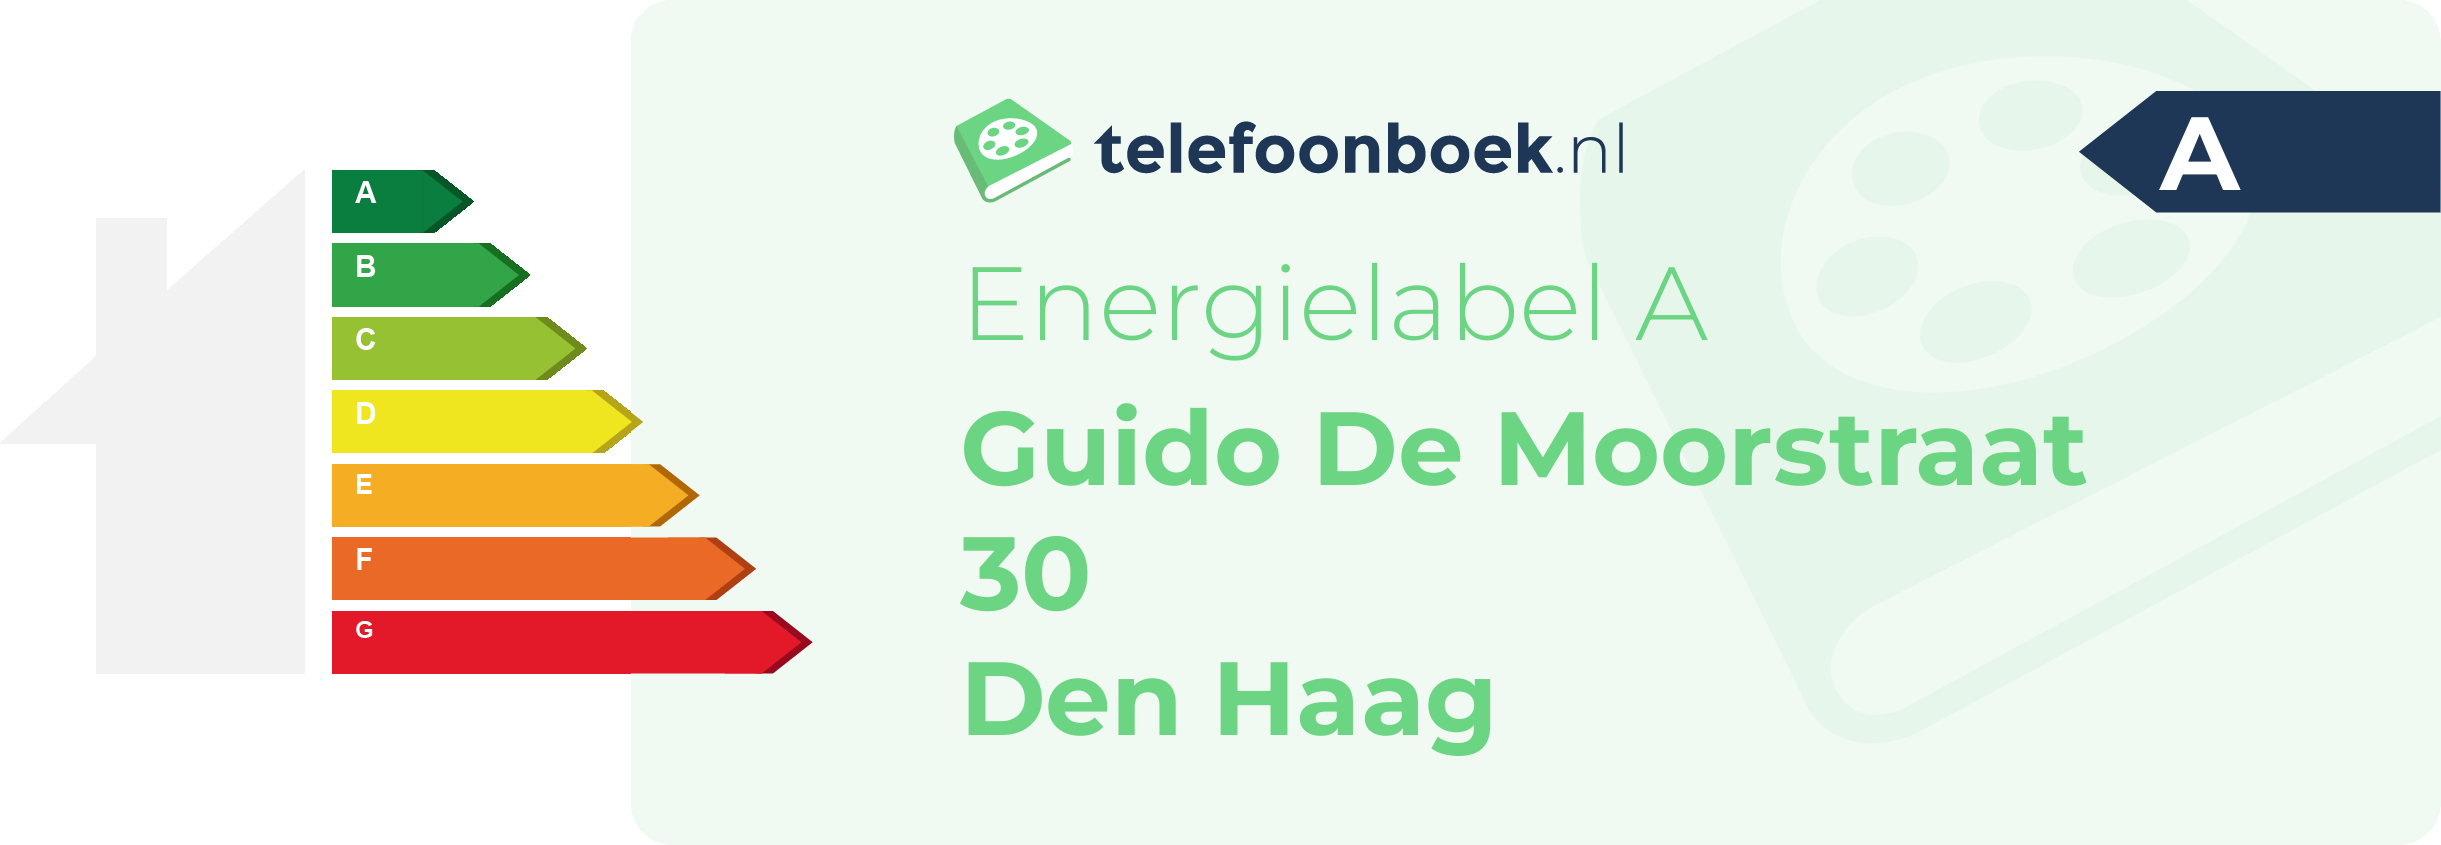 Energielabel Guido De Moorstraat 30 Den Haag